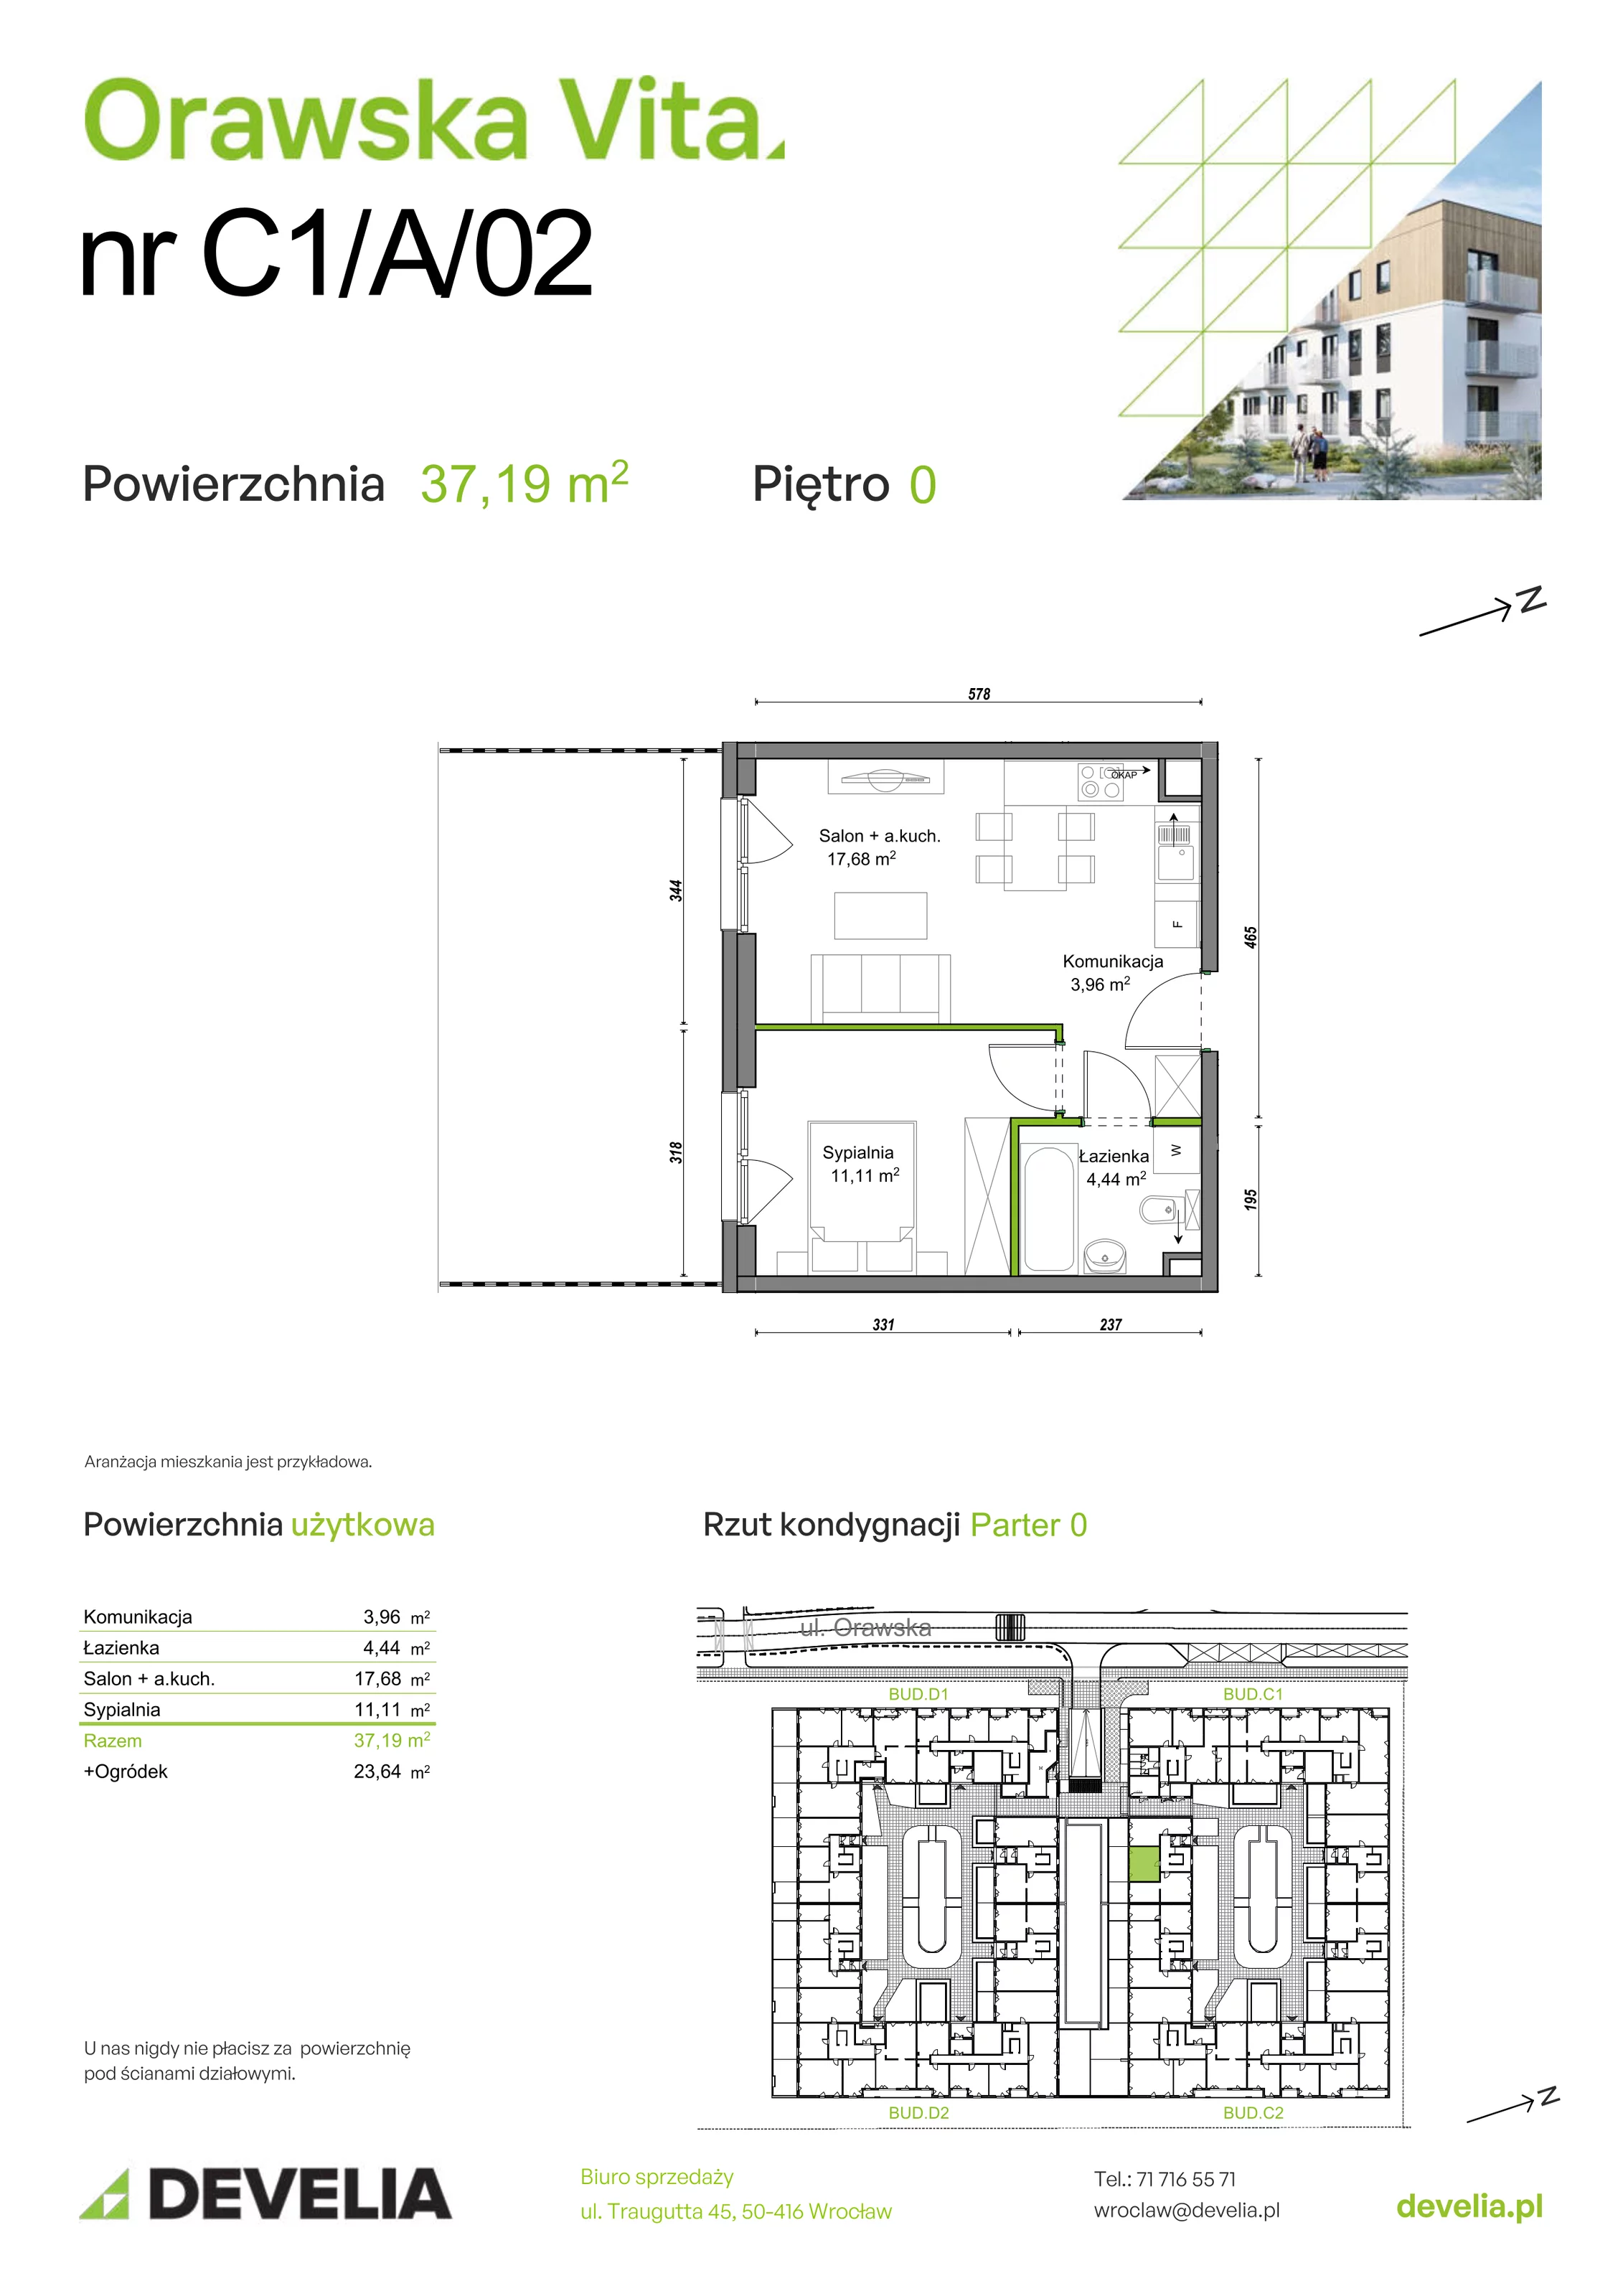 Mieszkanie 37,19 m², parter, oferta nr C1/A/02, Orawska Vita, Wrocław, Ołtaszyn, Krzyki, ul. Orawska 73